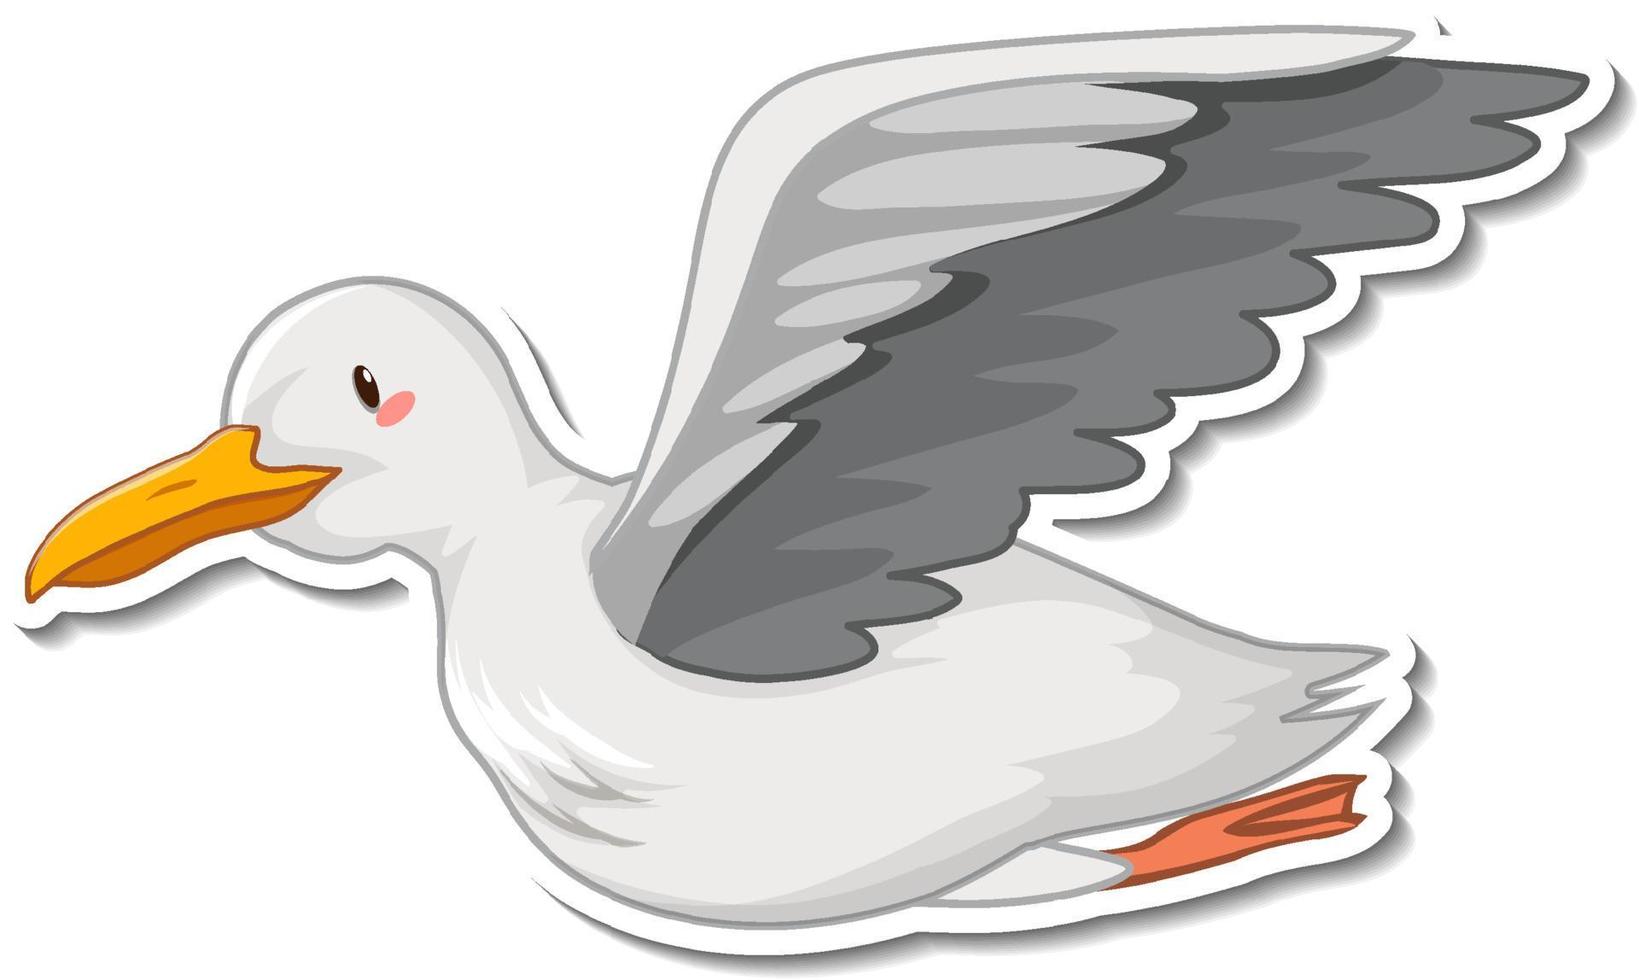 Dove bird cartoon sticker on white background vector